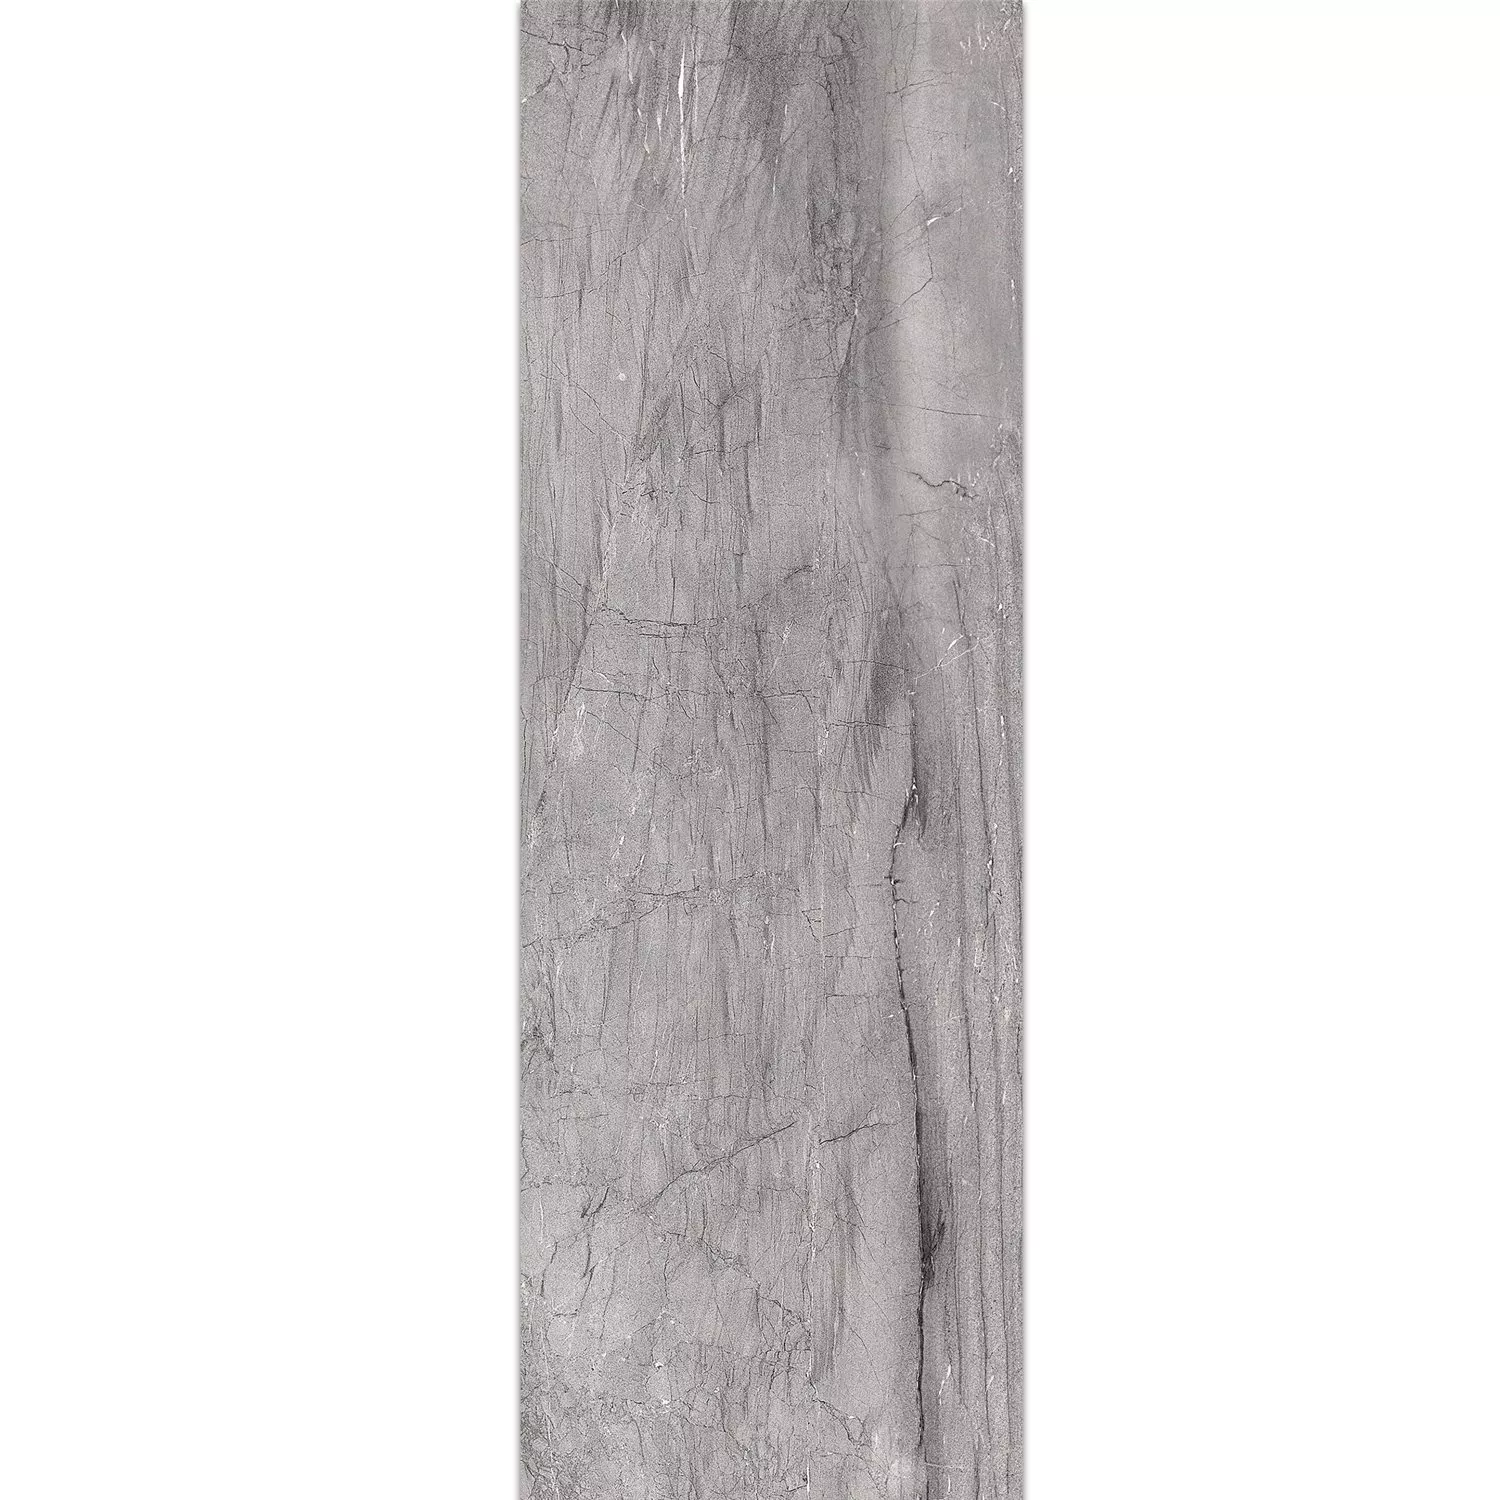 Zidne Pločice Capitol Grey 25x75cm